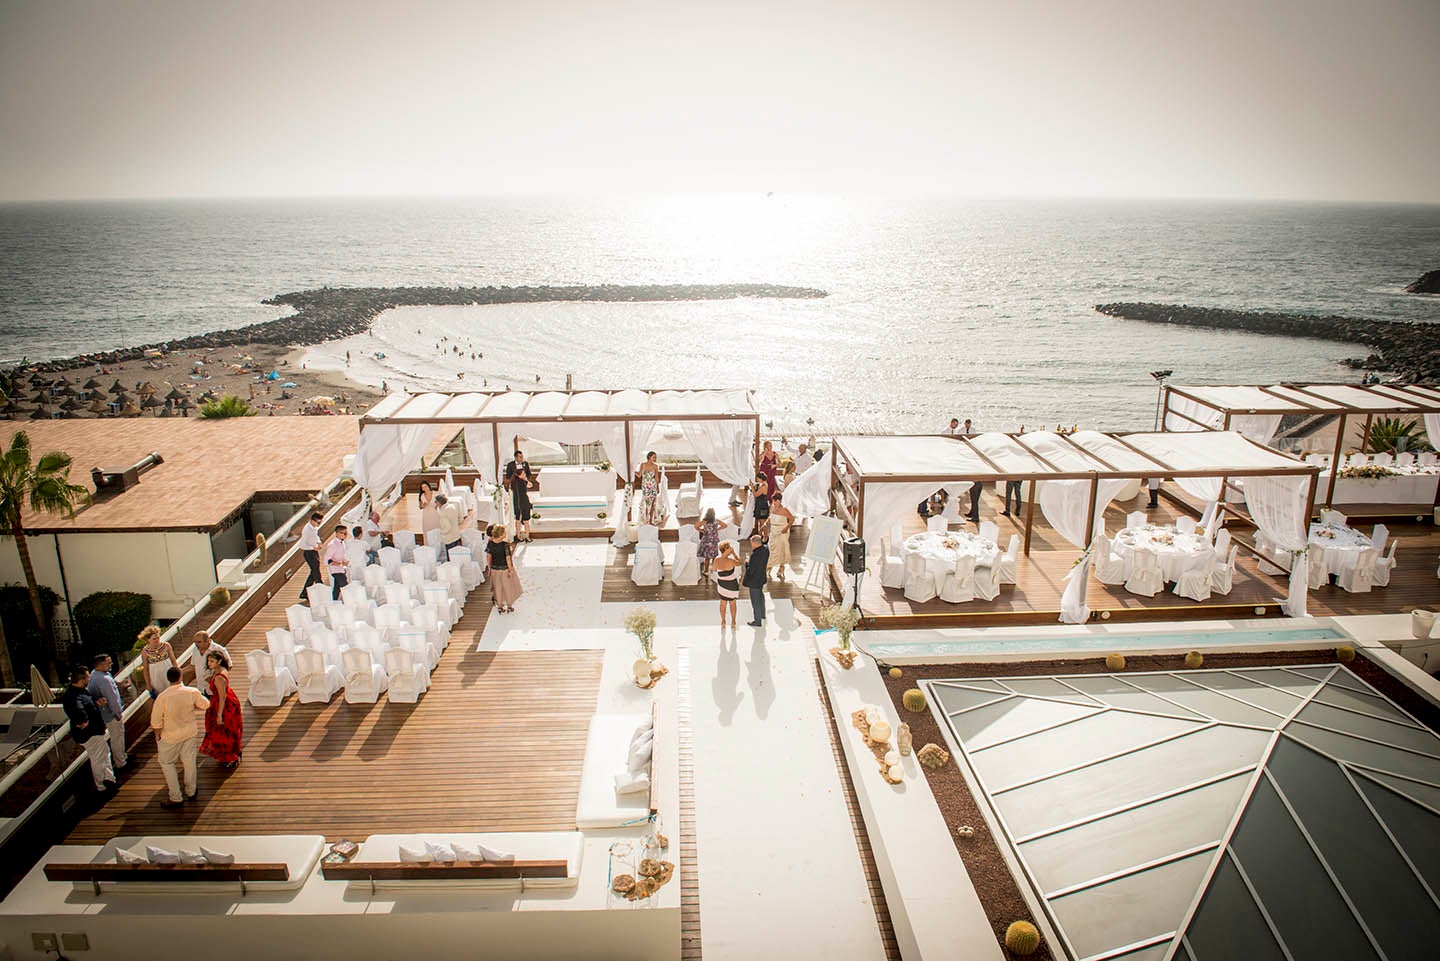 Vista aerea dell‘allestimento per matrimonio davanti al mare